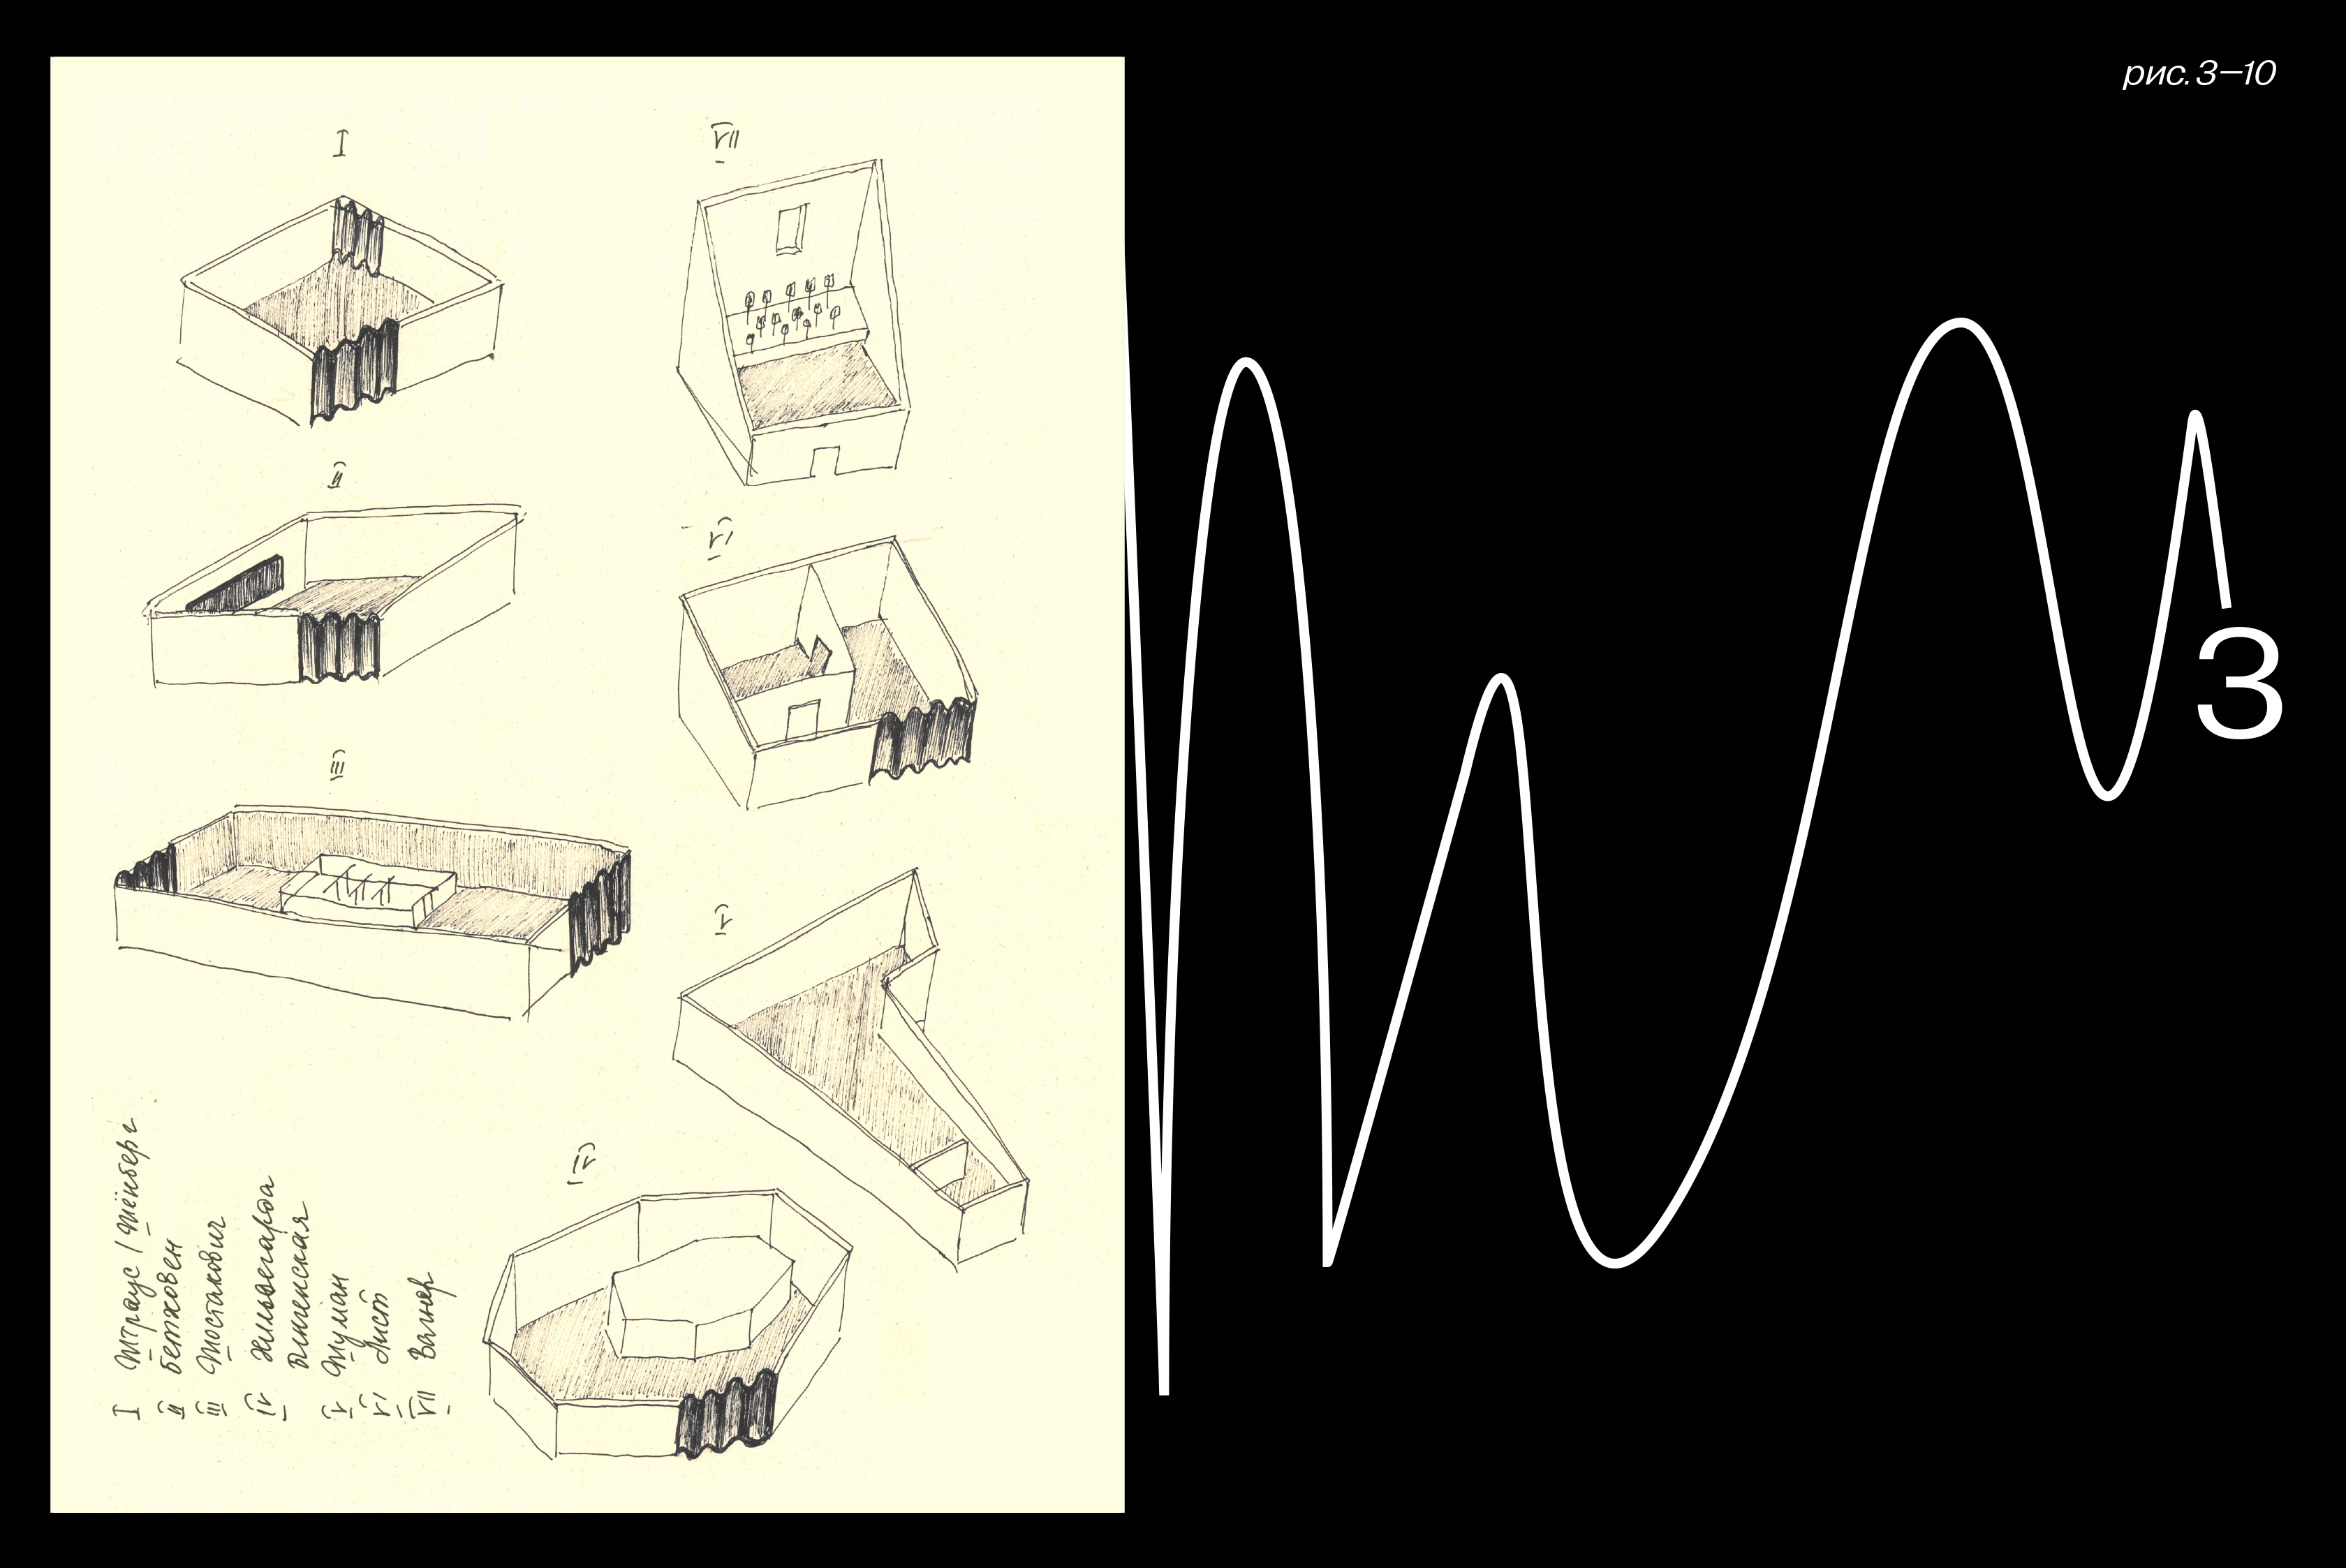 карандашные рисунки каждого из 7 павильонов выставки; движущееся изображение звуковой волны; цифра 3; надпись «рис. 3-10»